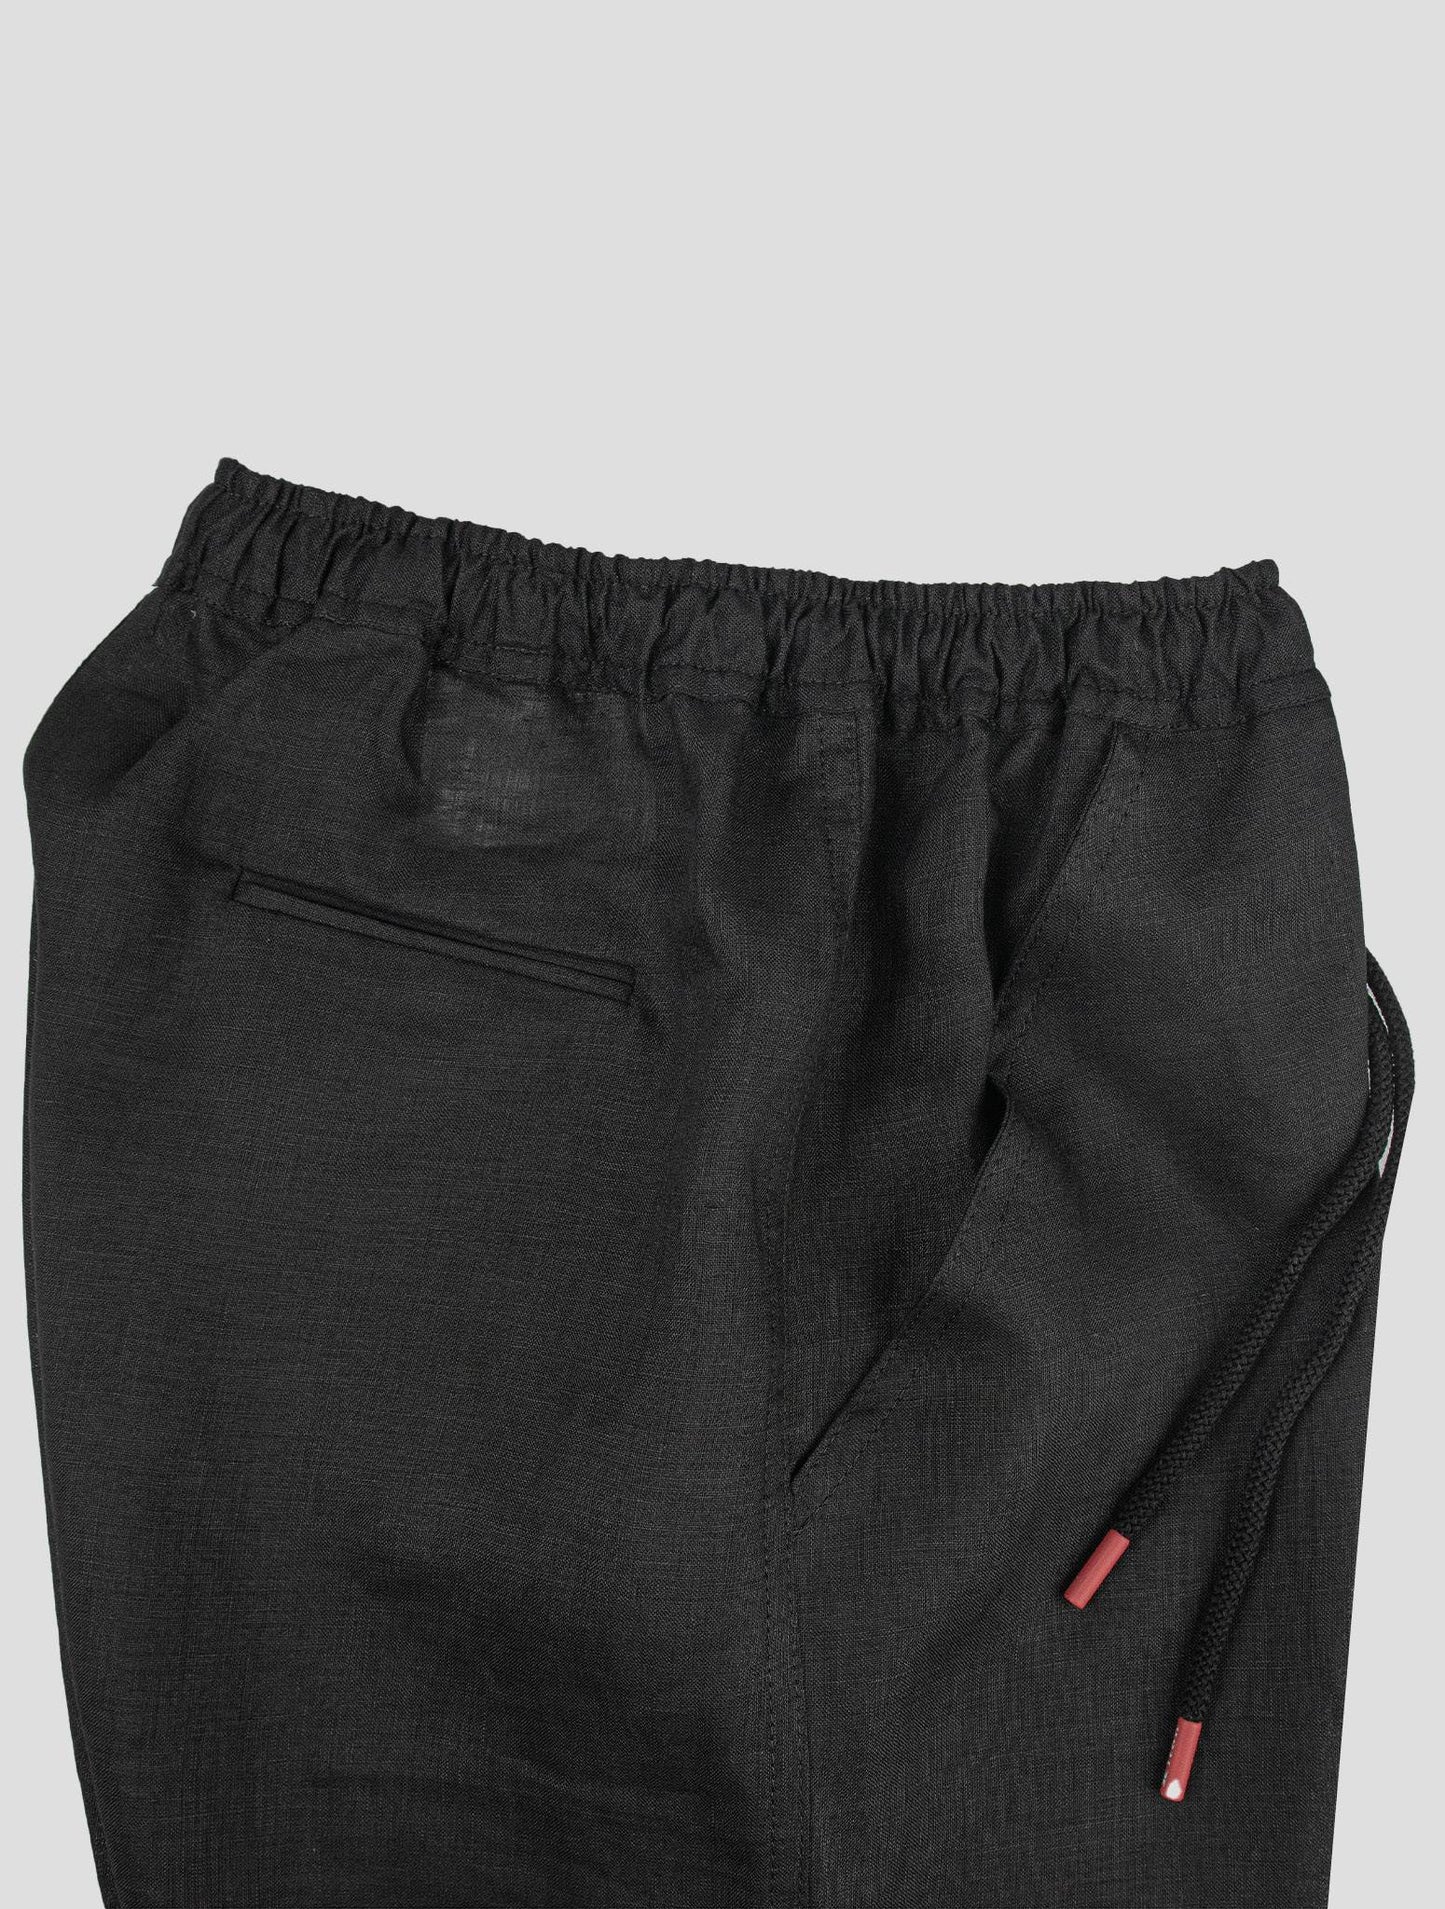 Kiton Black Linen Short Pants